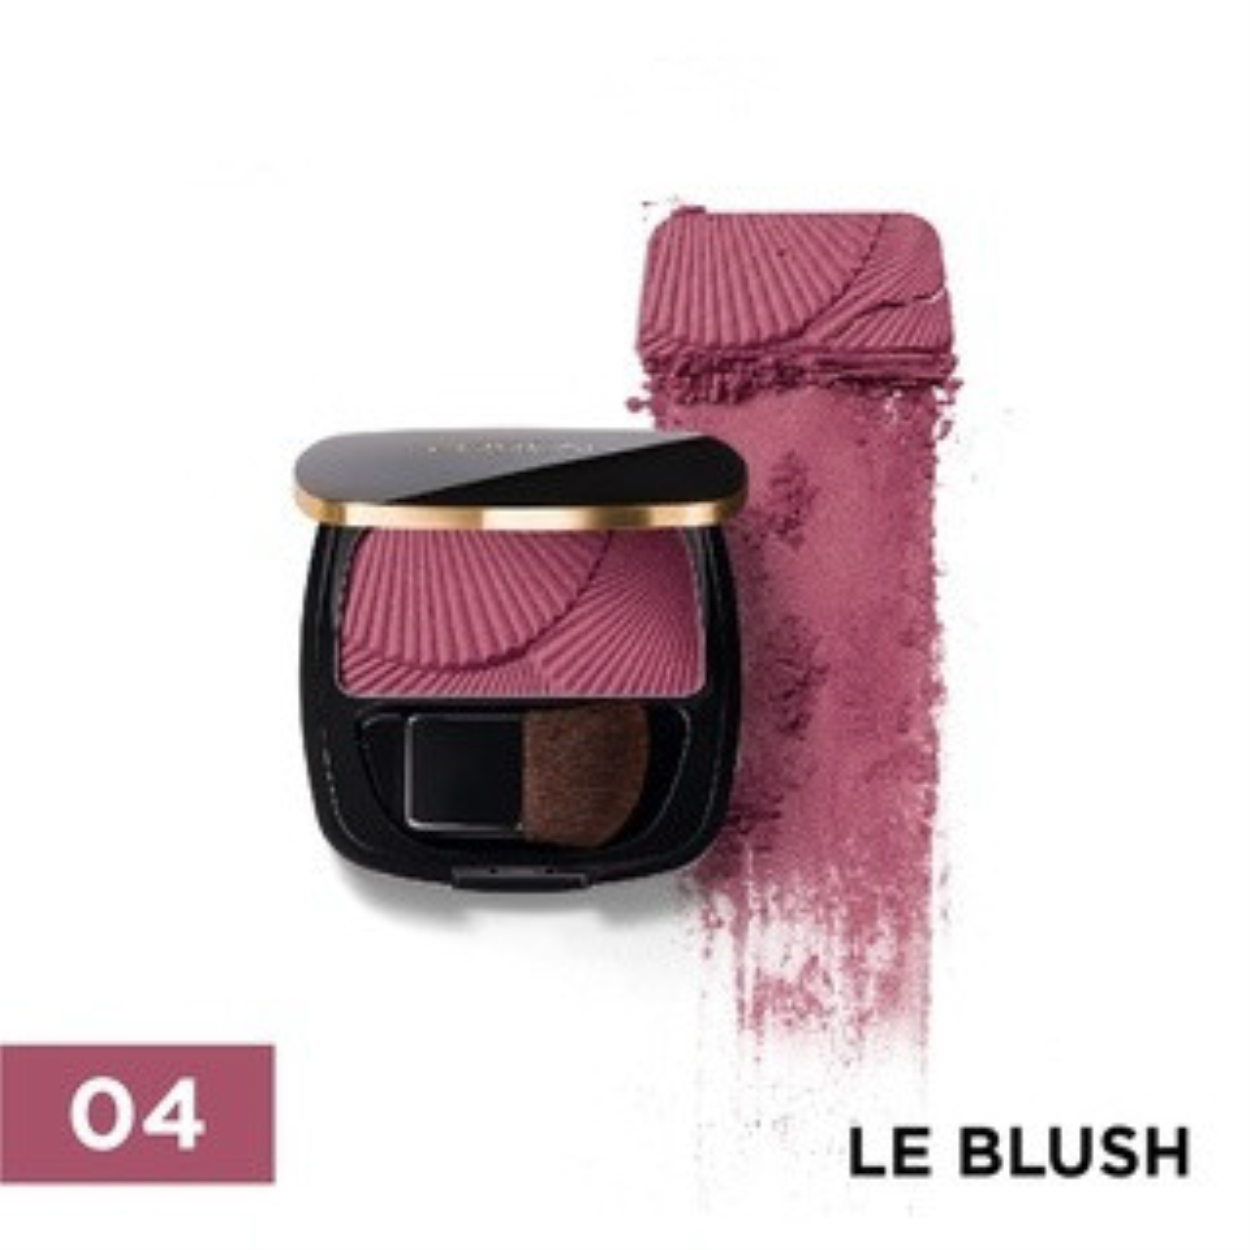 L’OREAL Le Blush Shimmer_L